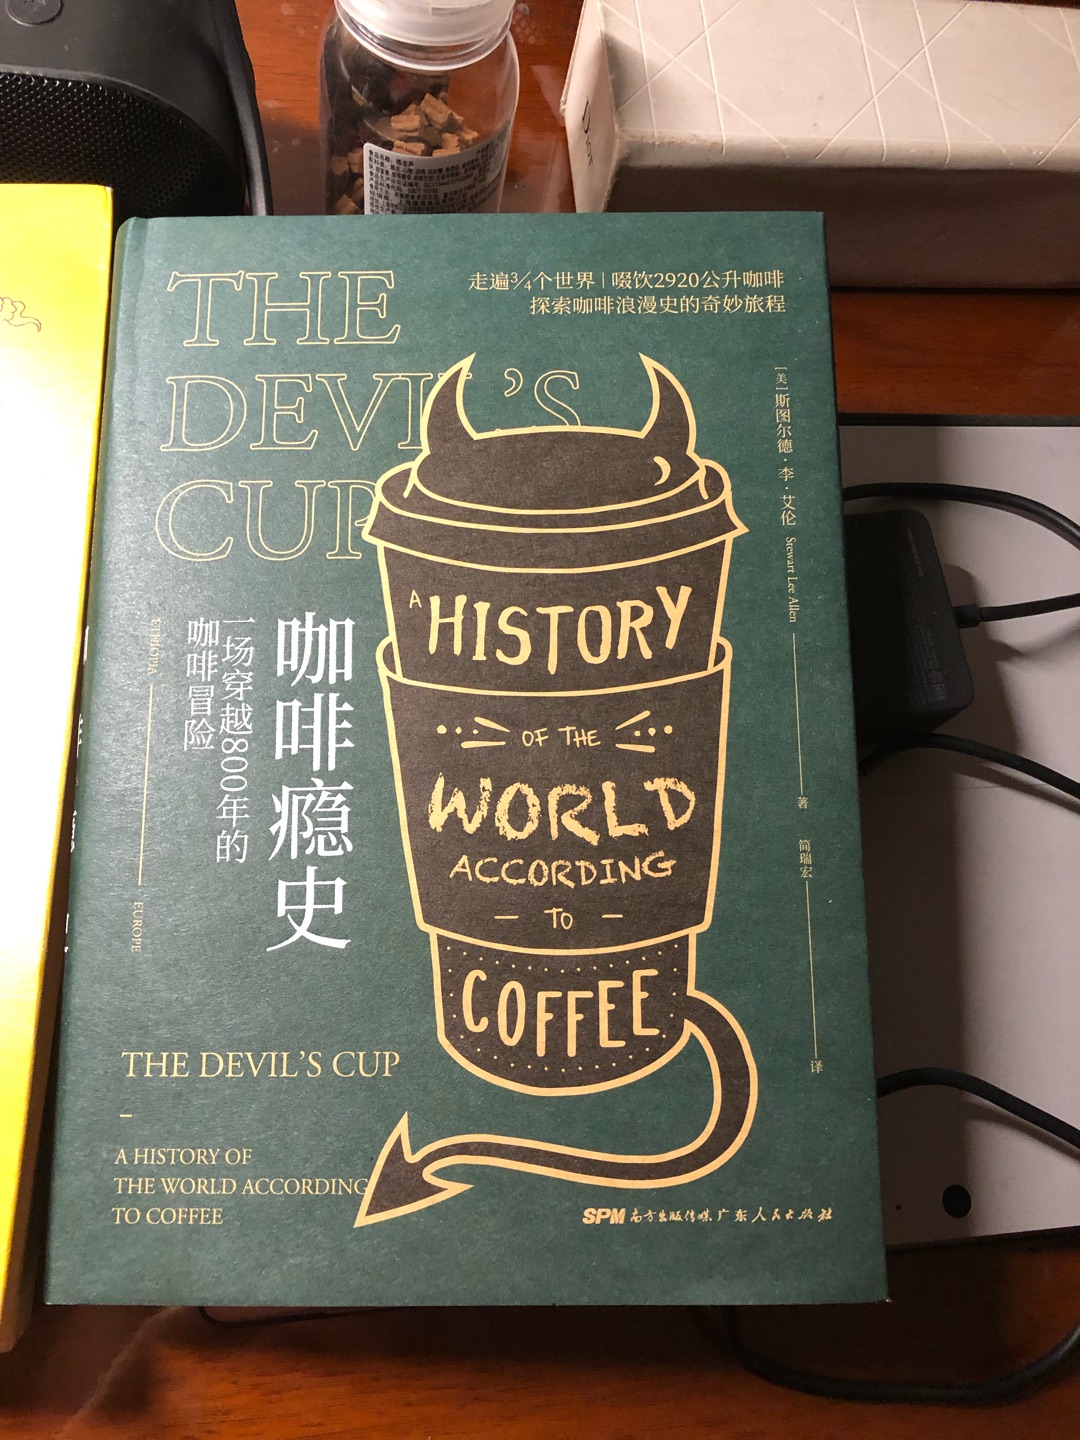 平时非常喜欢咖啡，便想了解咖啡历史，这本书满足了我的愿望，非常好?